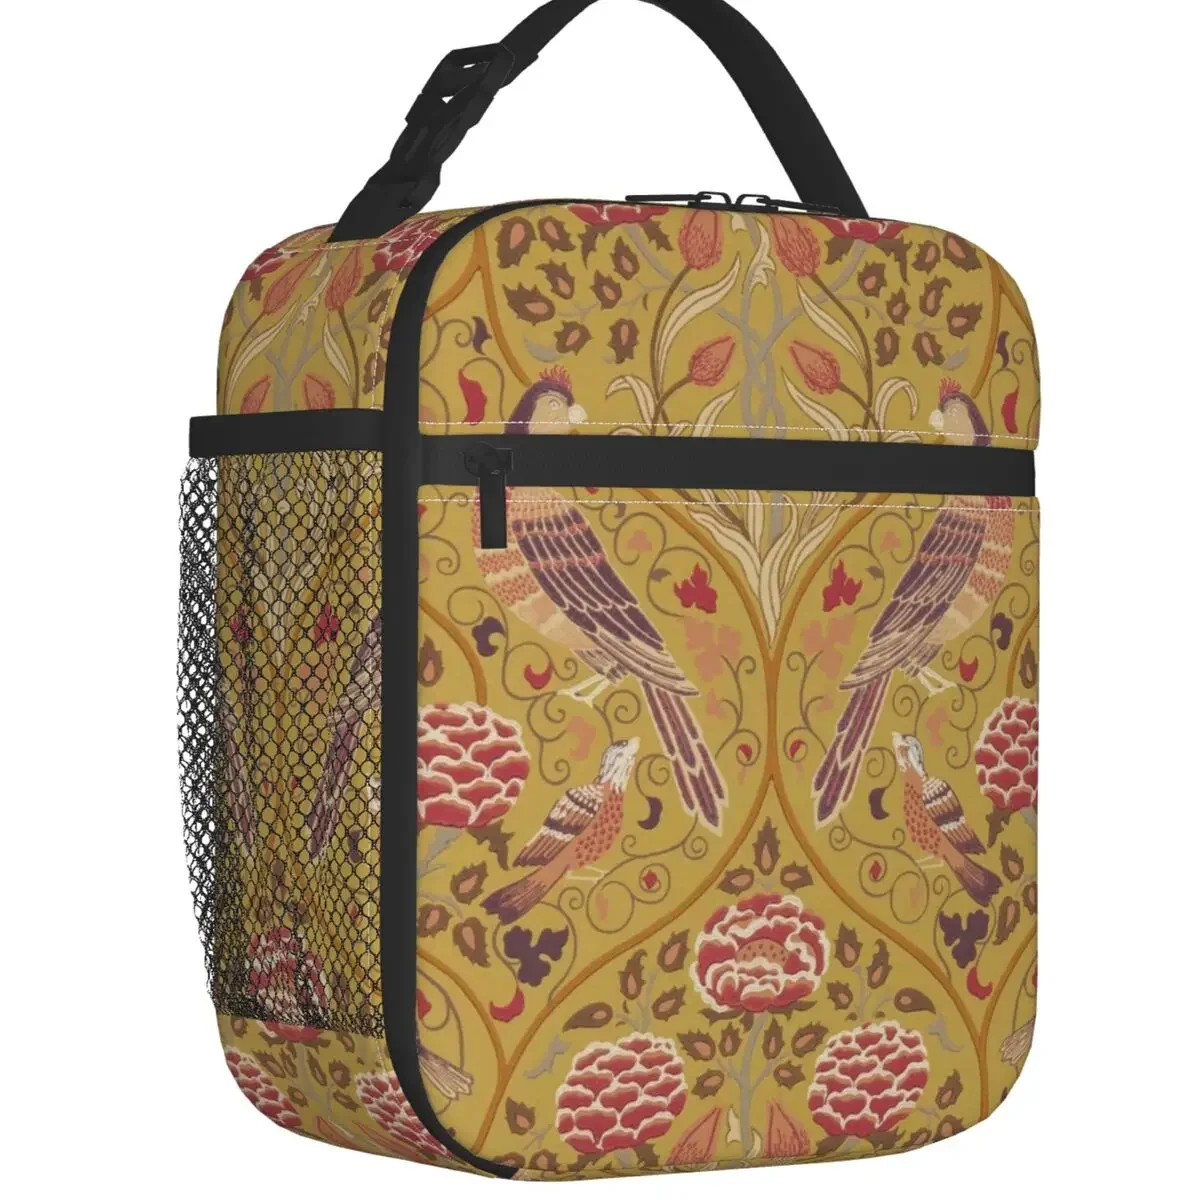 

Женская сумка-тоут с винтажным цветочным принтом, с изоляцией